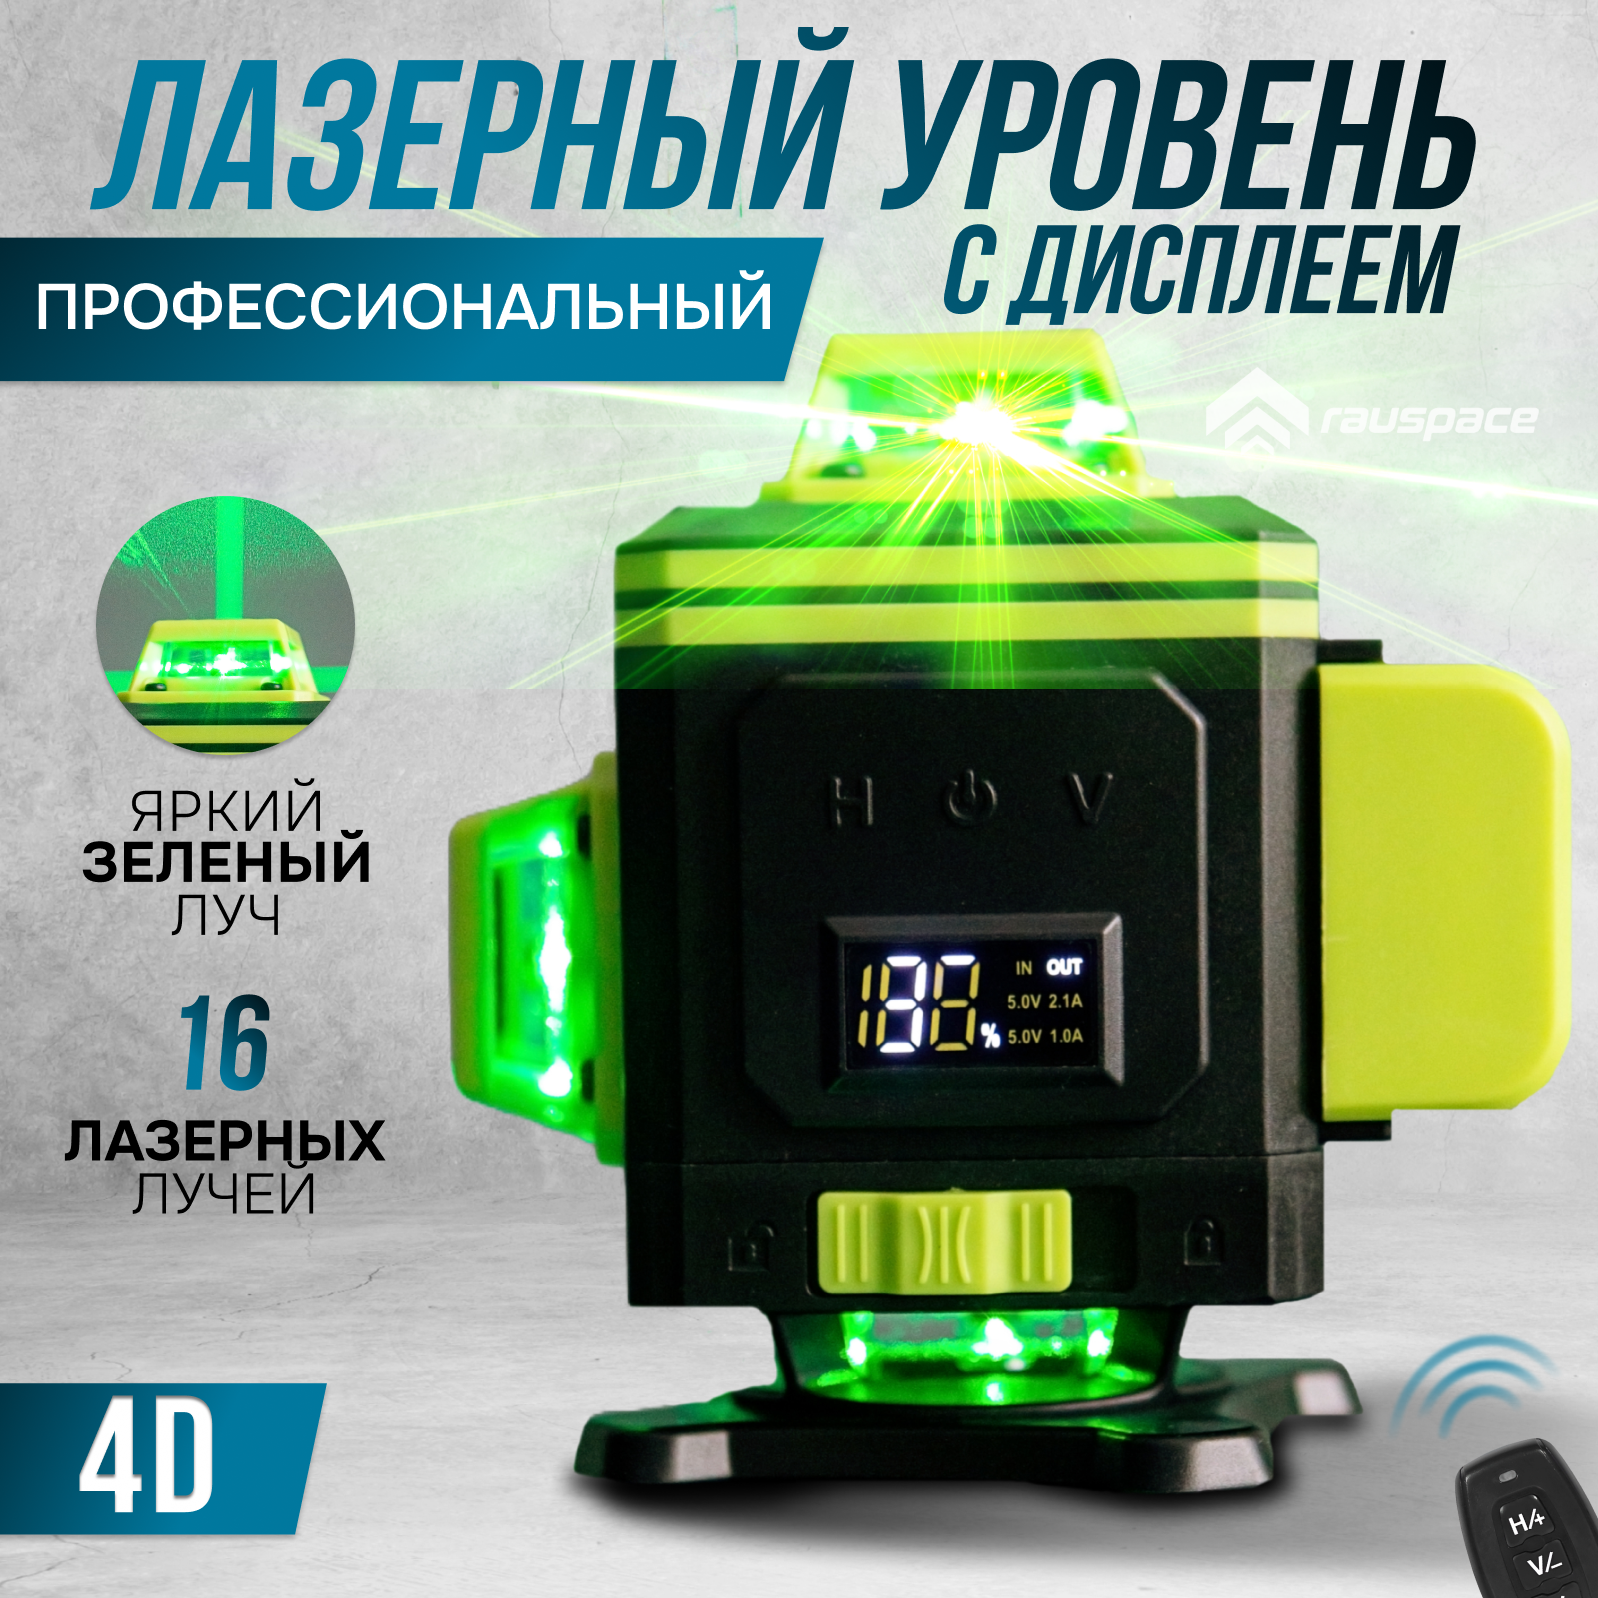 Лазерный нивелир L FINE LLX-360-05 4D 16 линий (зеленый луч) лазерный нивелир deko ll12 hvr premium со штативом 1 м 12 линий 065 0105 2